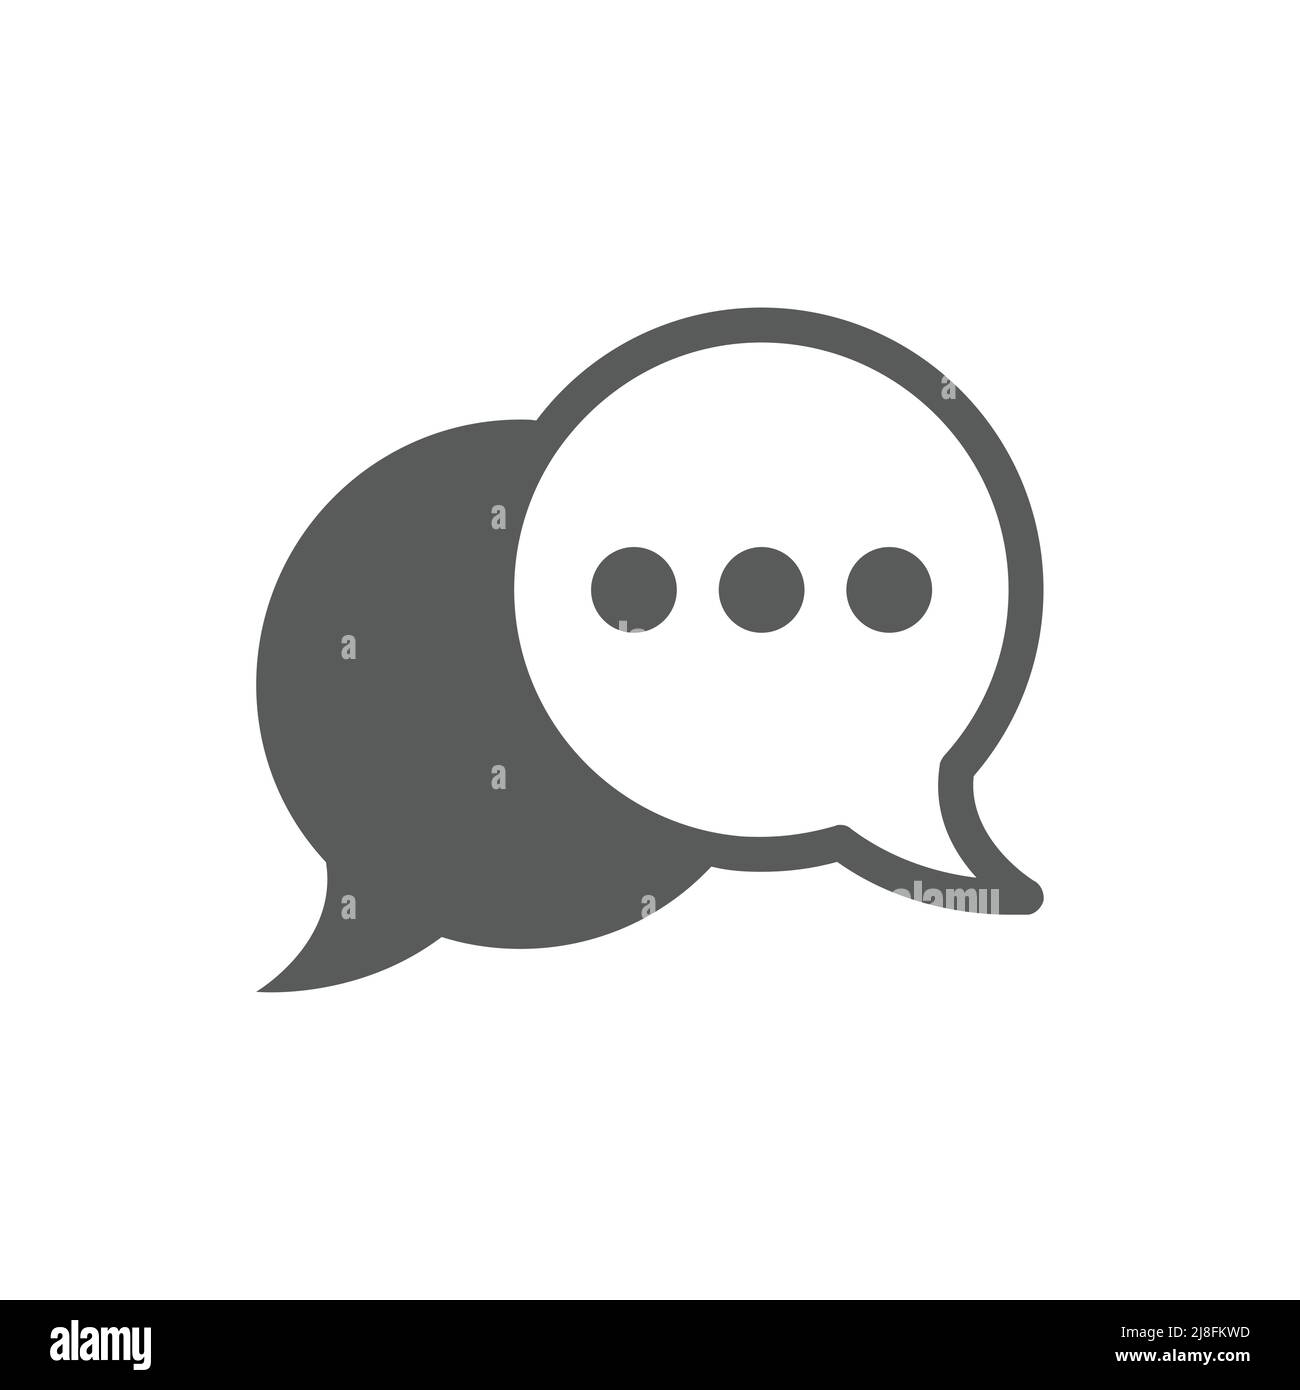 Icona vettoriale nero fumetto vocale impostata. Icone piene di fumetto chat. Illustrazione Vettoriale